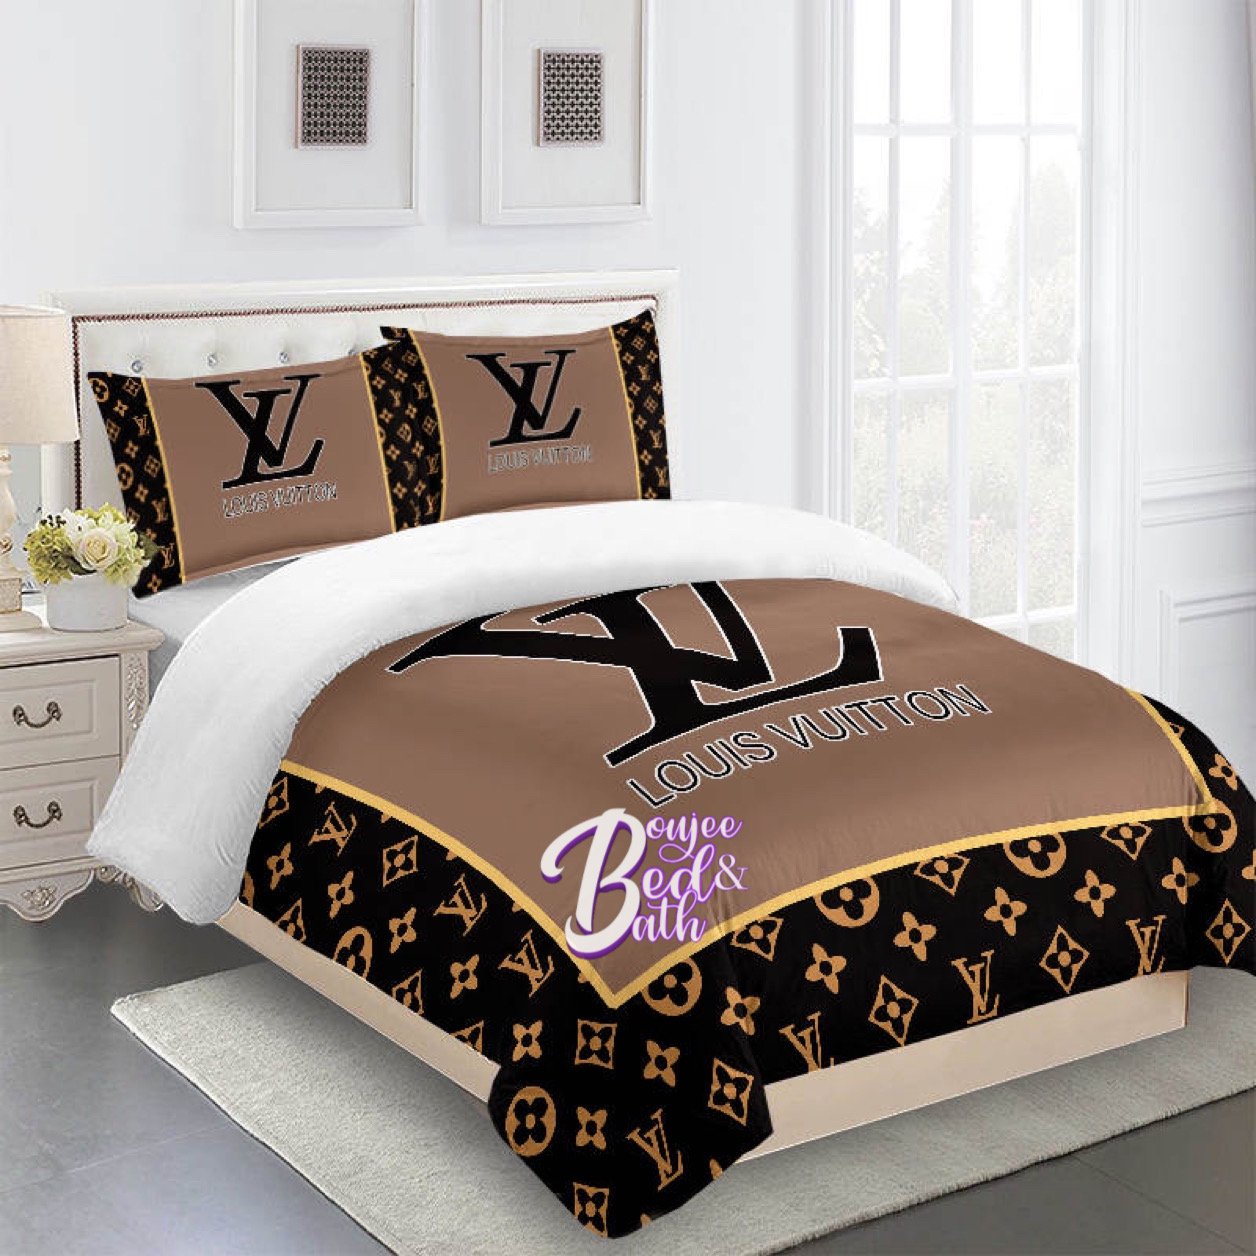 LV Bed Sheets In Ghana For Sale  Bedding  Reapp Ghana